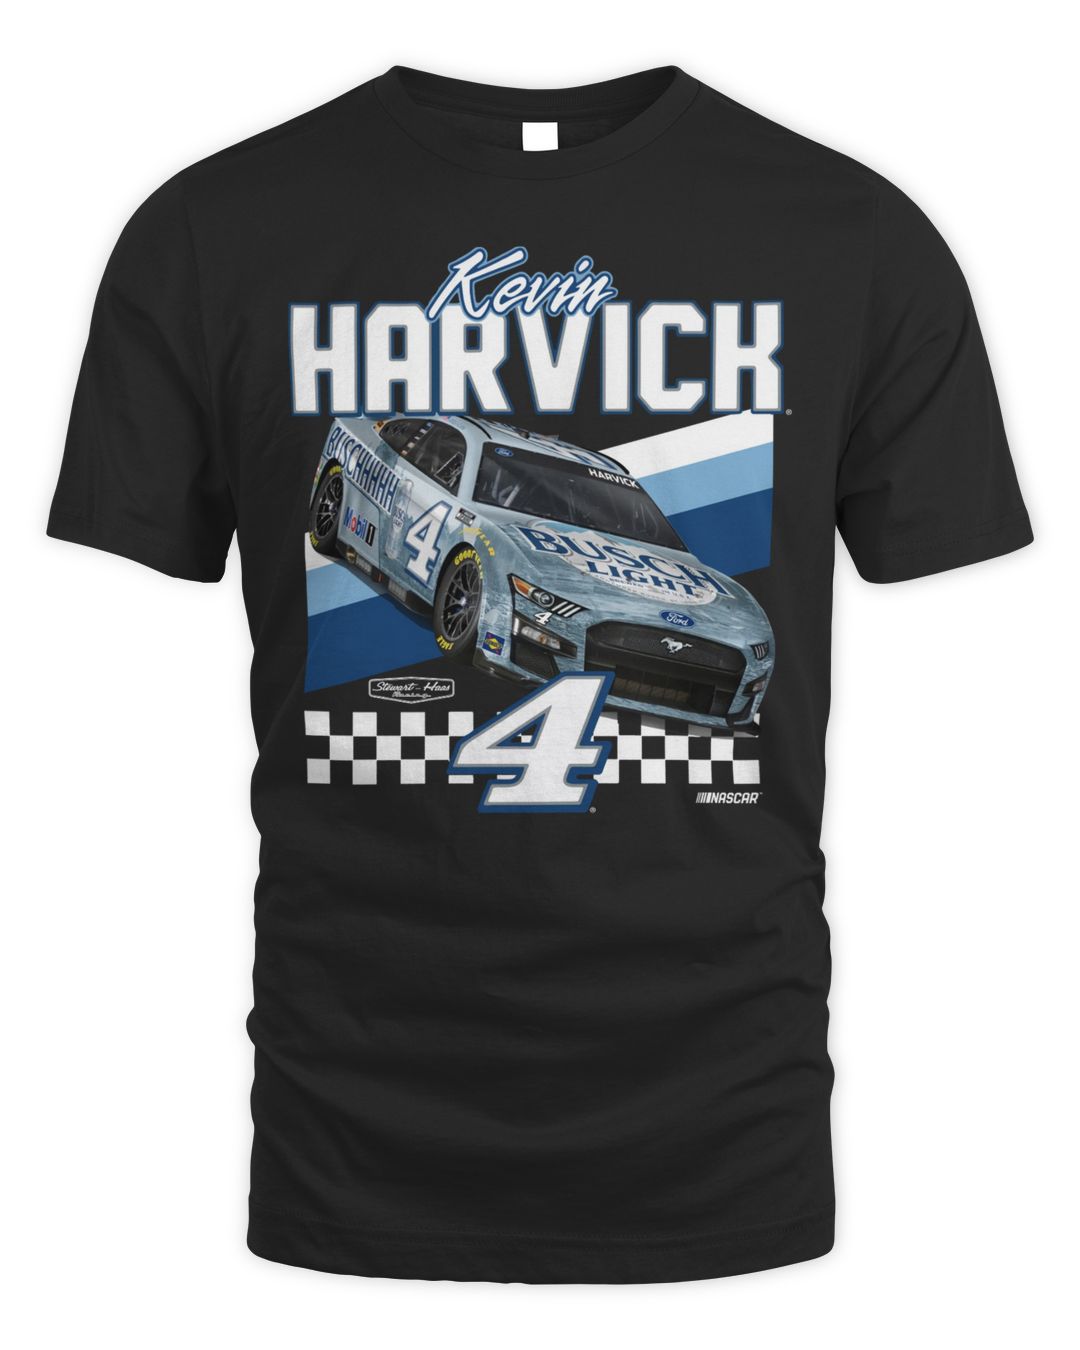 Kevin Harvick Stewart-Haas Racing Team Collection Busch Light Front Runner Shirt